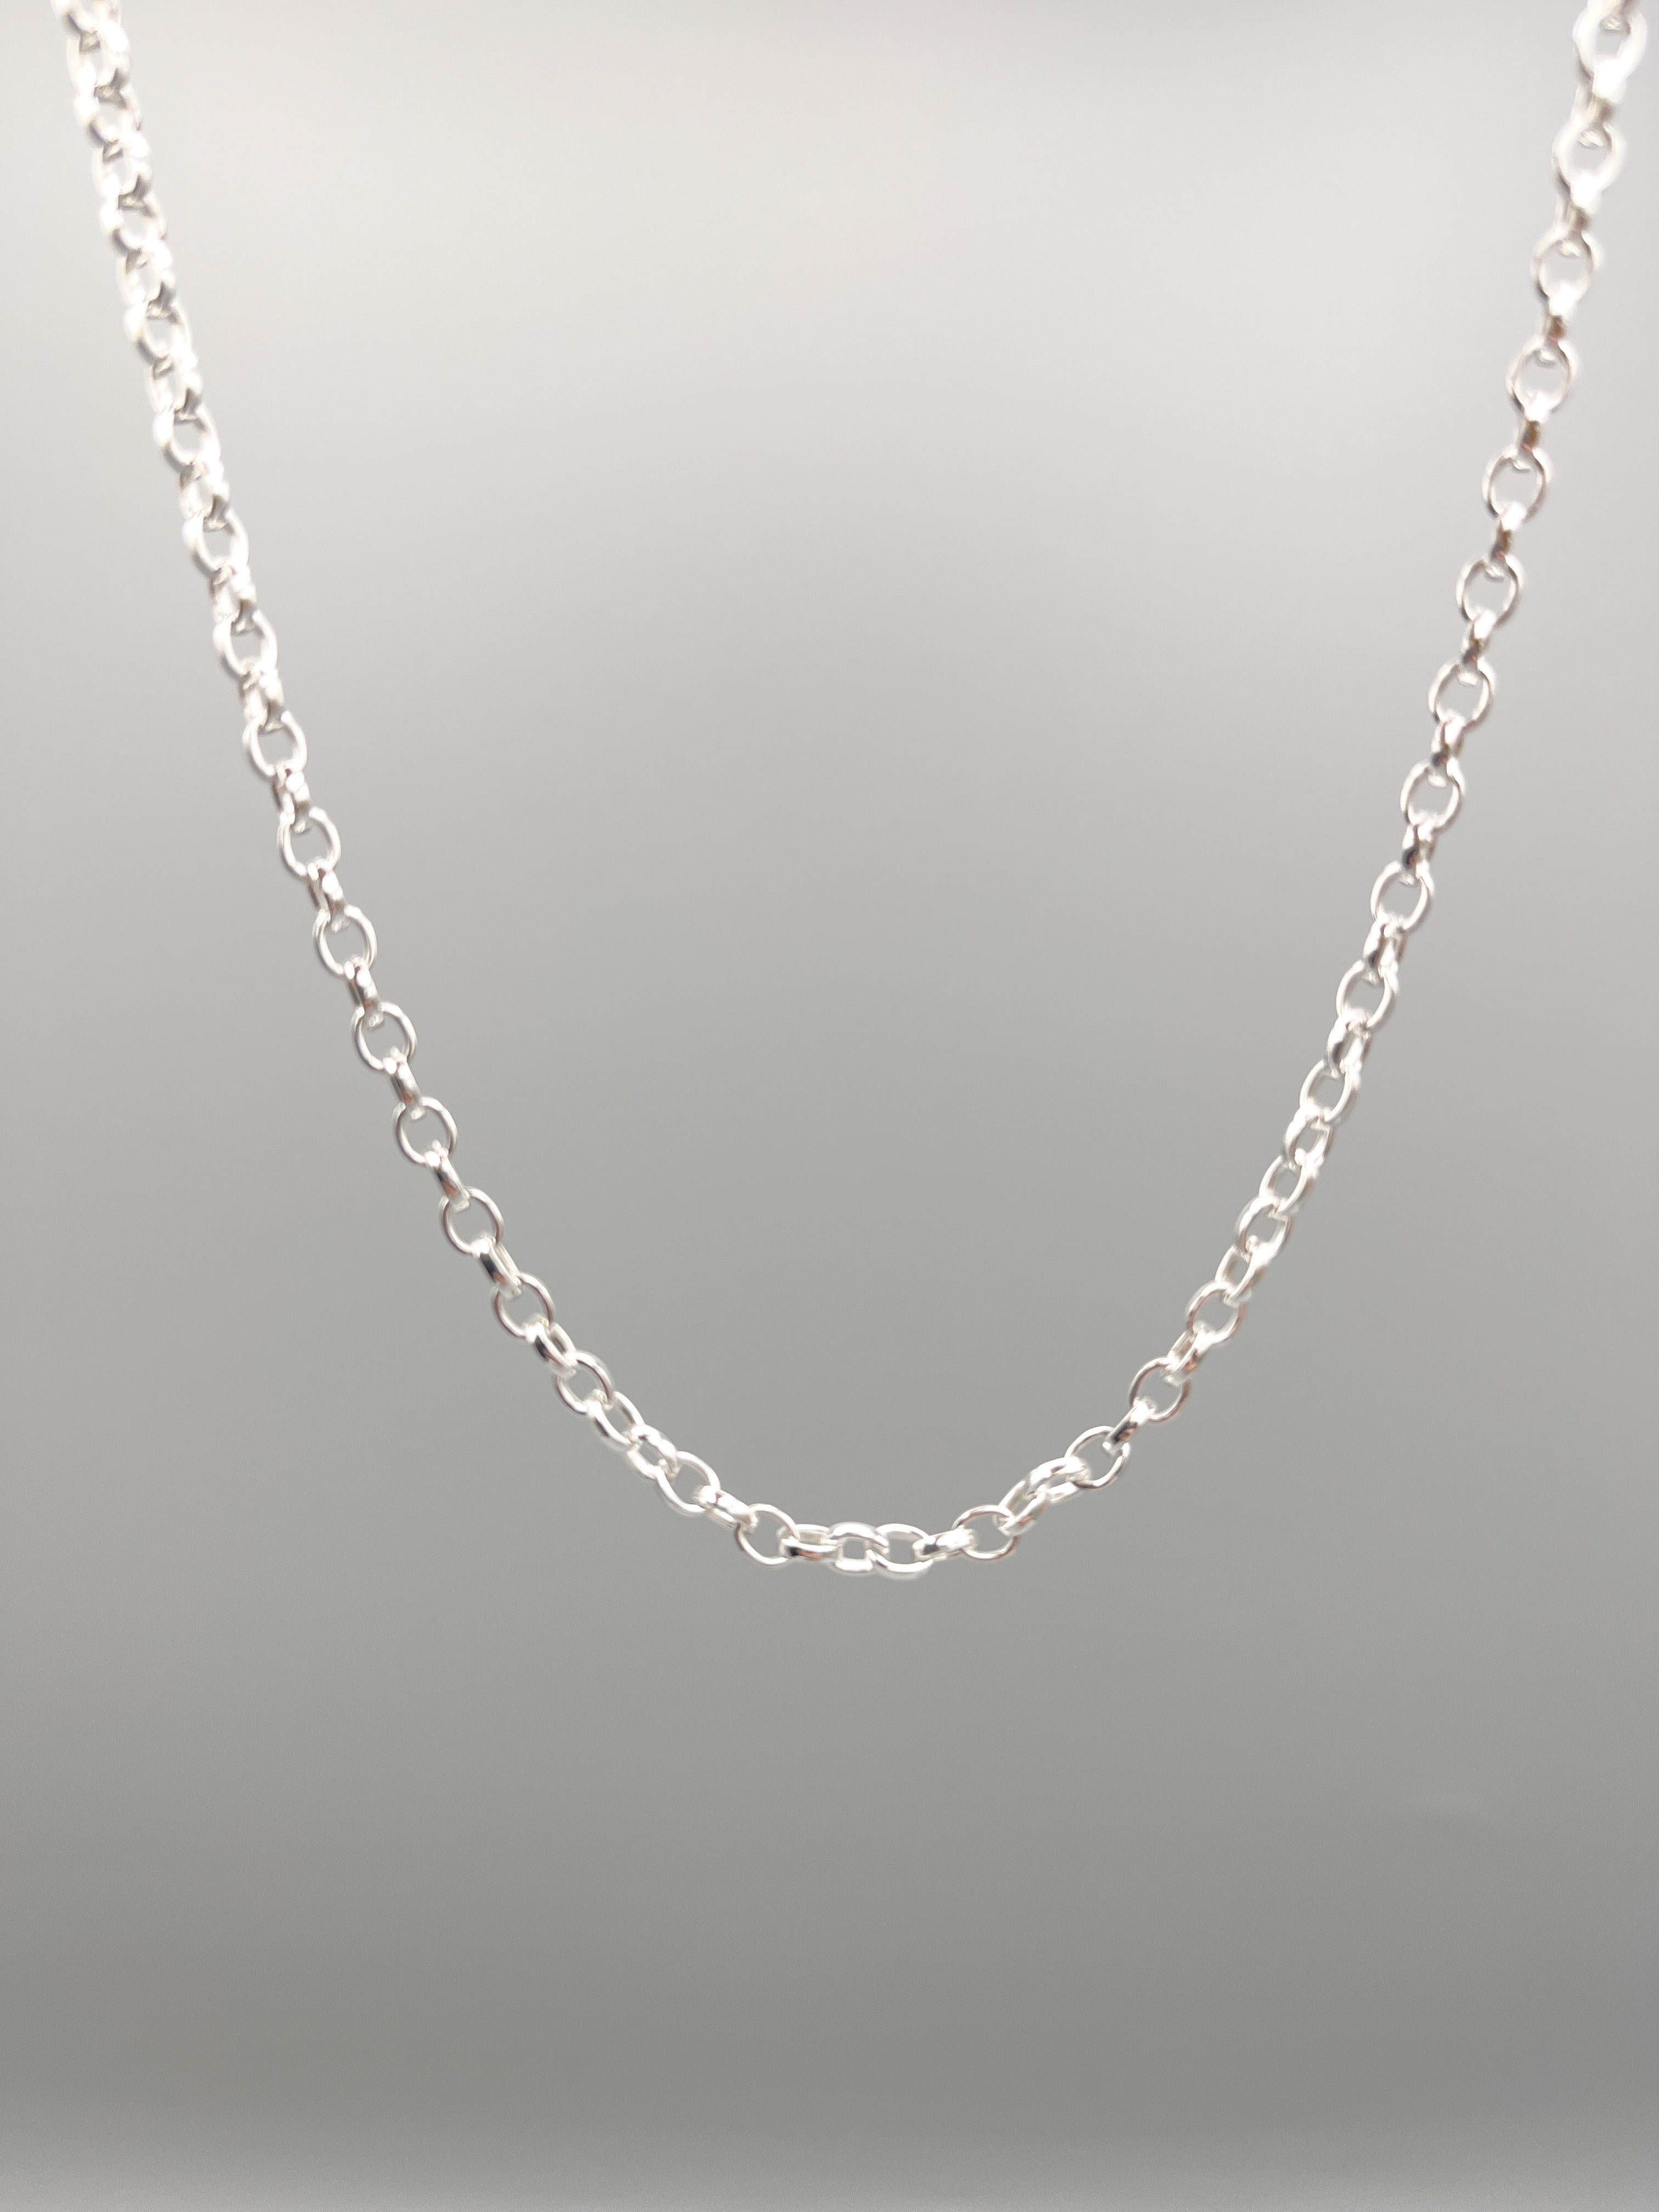 Sterling Silver Necklace. 18” (45cm) long polished 3mm polished belcher link